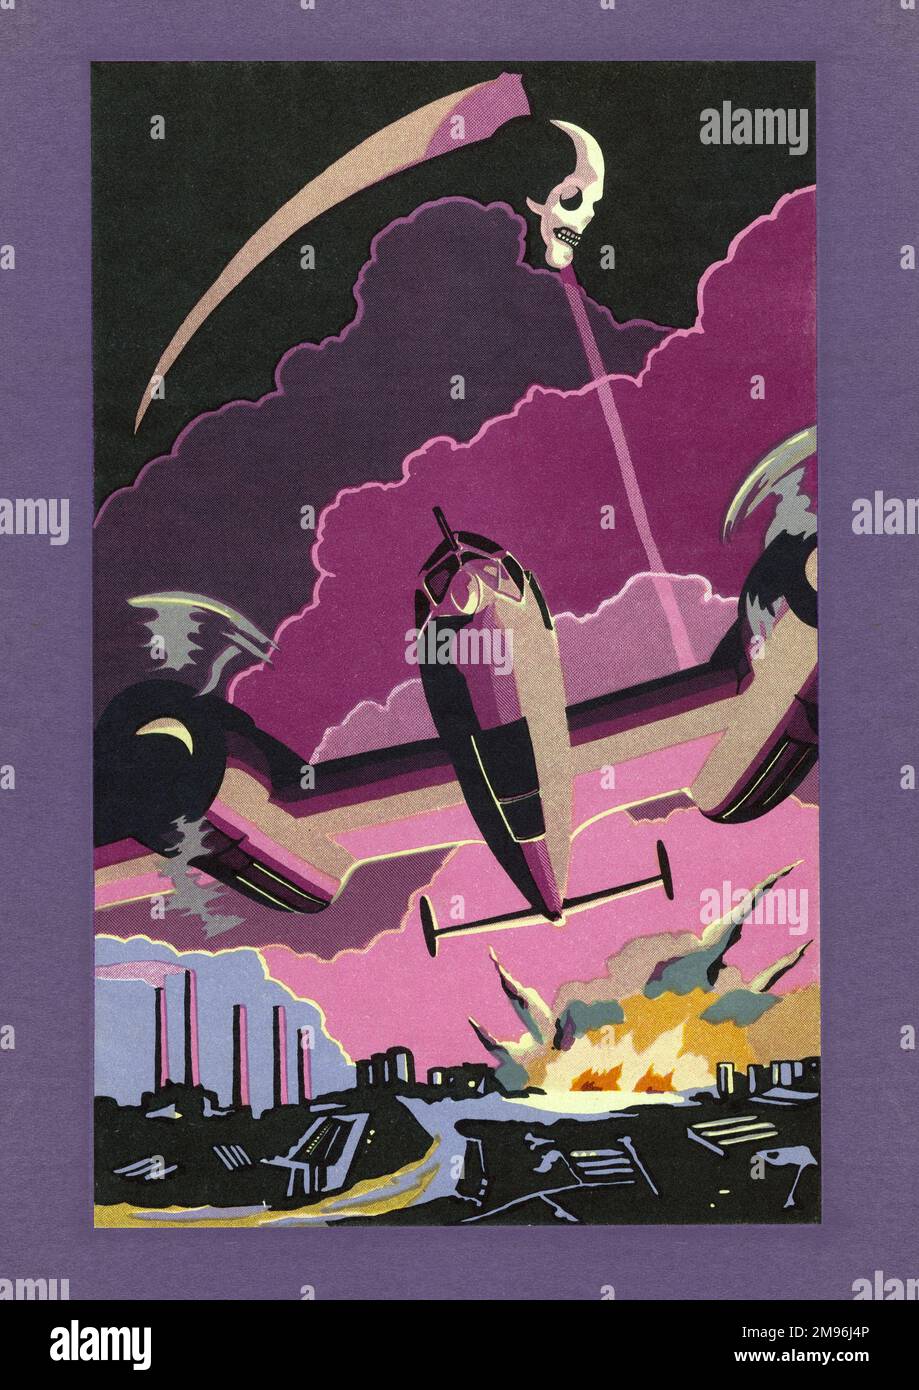 Ein Art déco-Design, das ein britisches Flugzeug darstellt, das Bomben auf eine deutsche Industrielandschaft wirft, mit einem Schädel und einer Sense, die oben schwebt. Eine Illustration von Sergeant J. W. Lambert zu einem Buch der Poesie von Sergeant R. P. L. Mogg, produziert als beide Kriegsgefangene in Deutschland während des Zweiten Weltkriegs waren. Stockfoto